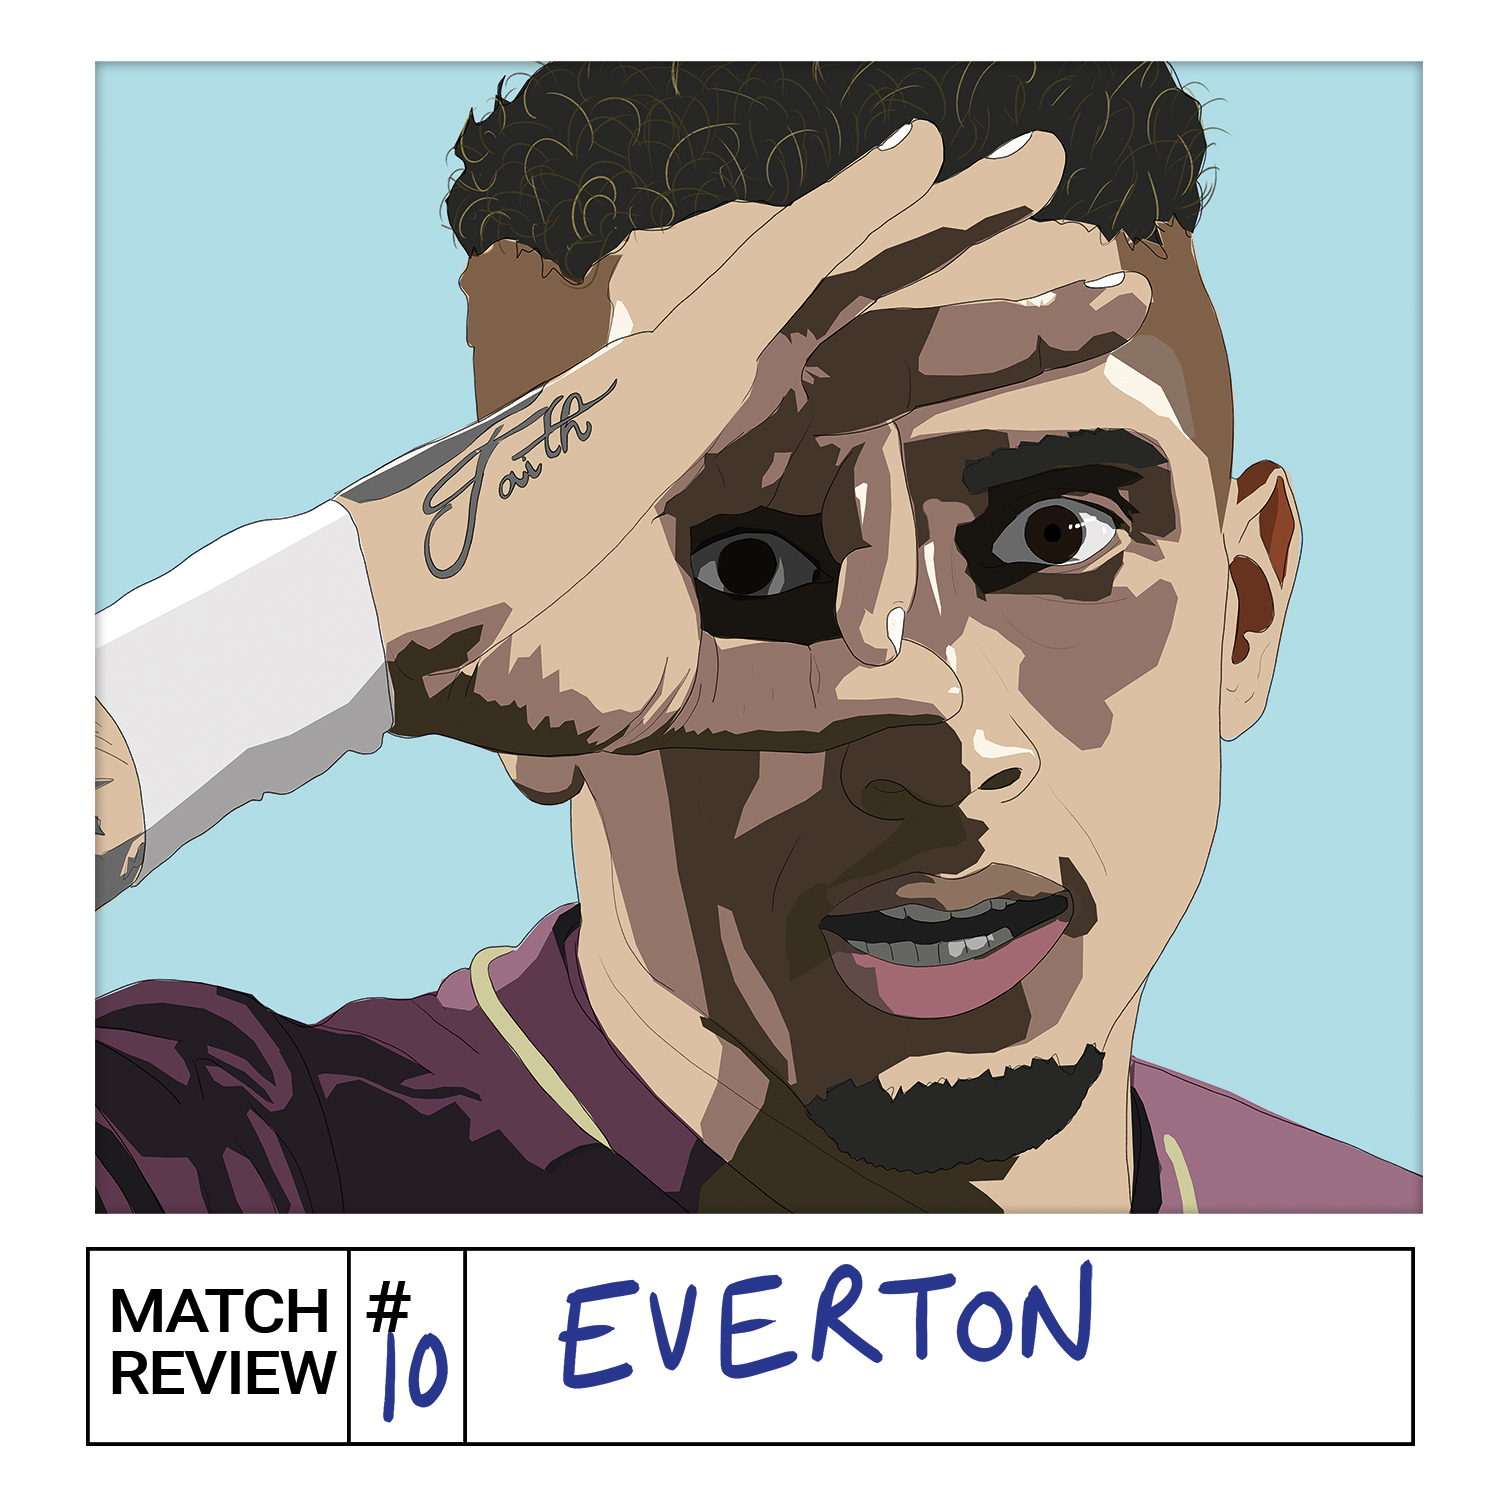 Everton 0 Leeds 1 | Match Review #10